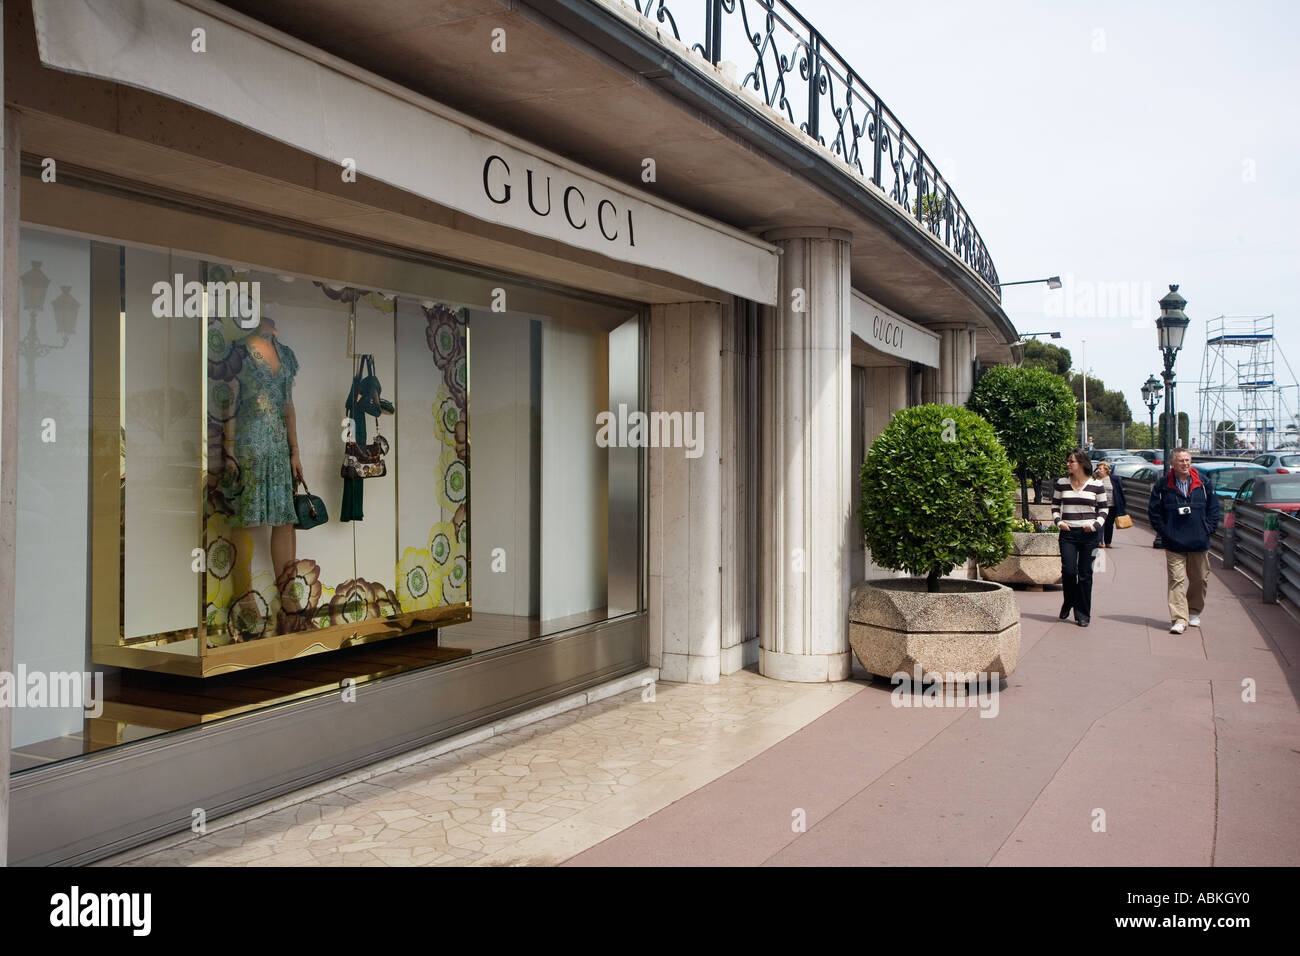 Gucci shop on Avenue de Monte Carlo in Monaco Stock Photo - Alamy